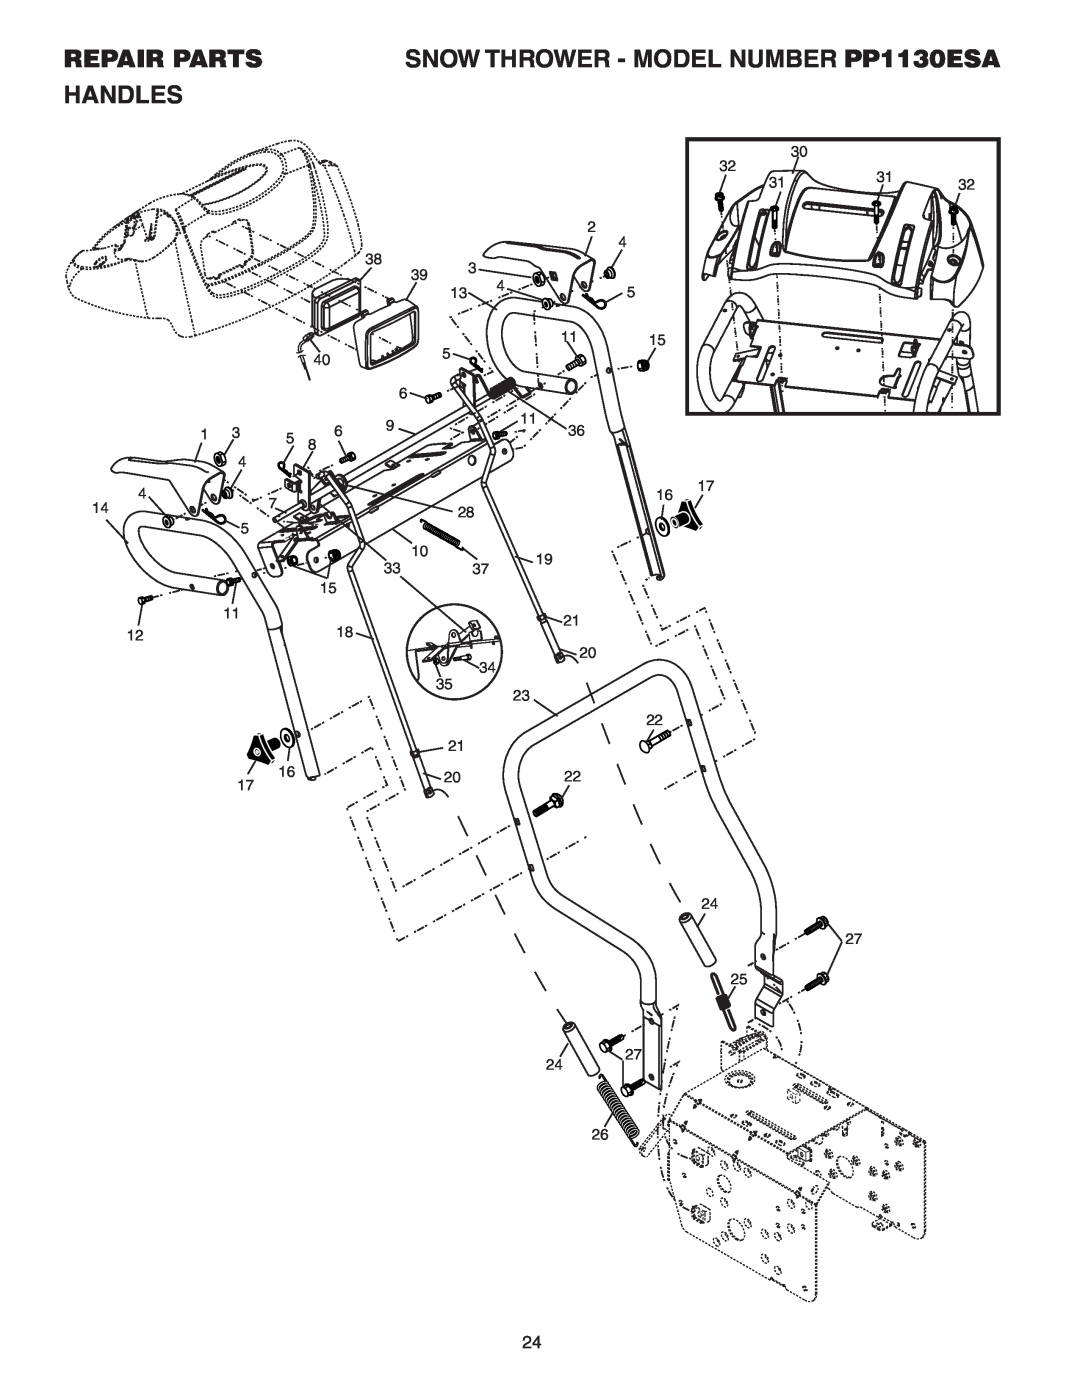 Poulan owner manual Handles, Repair Parts, SNOW THROWER - MODEL NUMBER PP1130ESA 